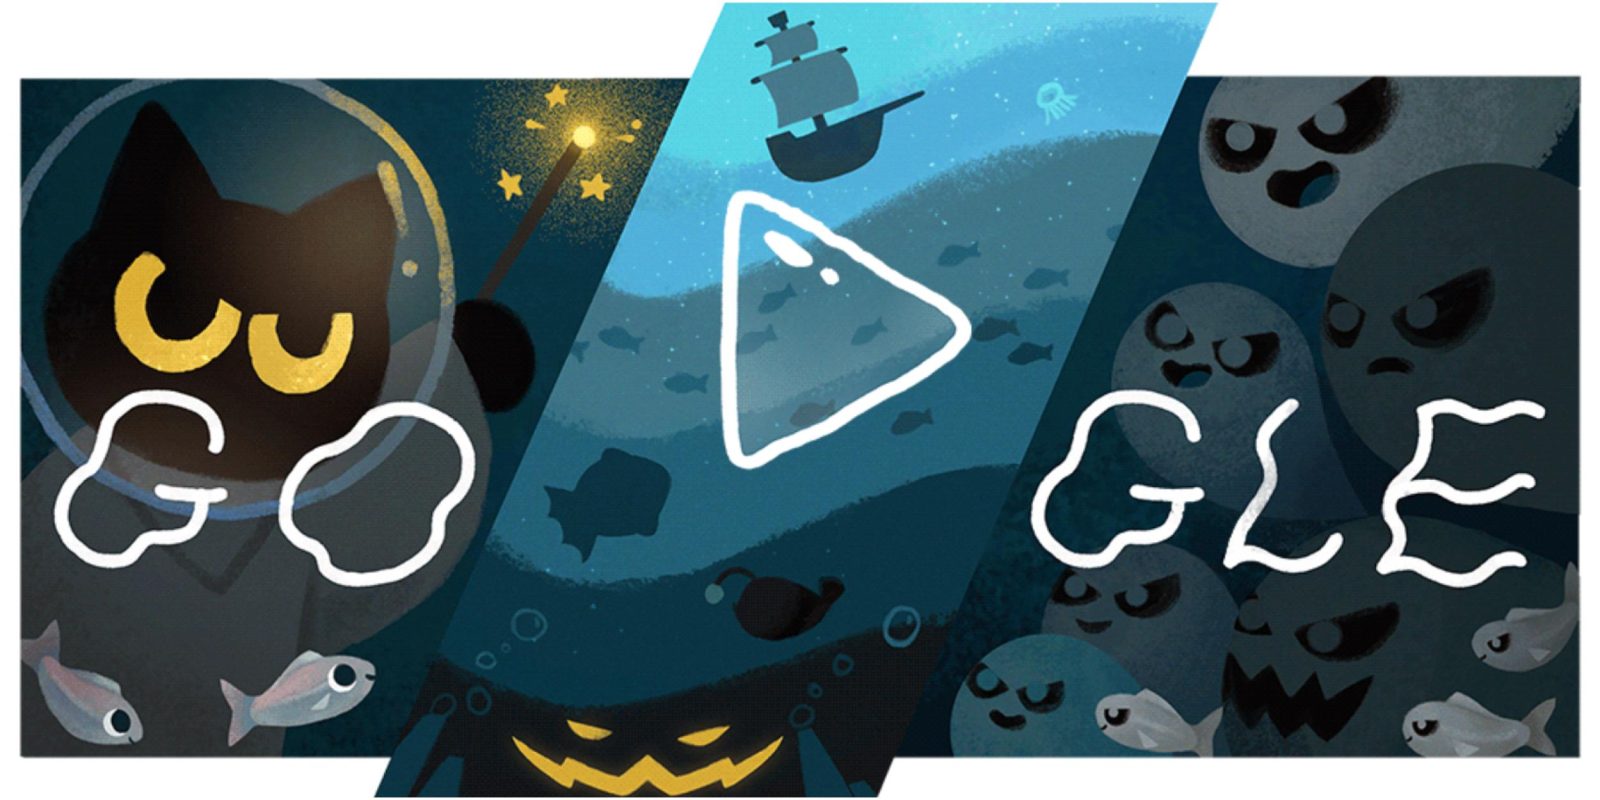 Google Halloween Doodle